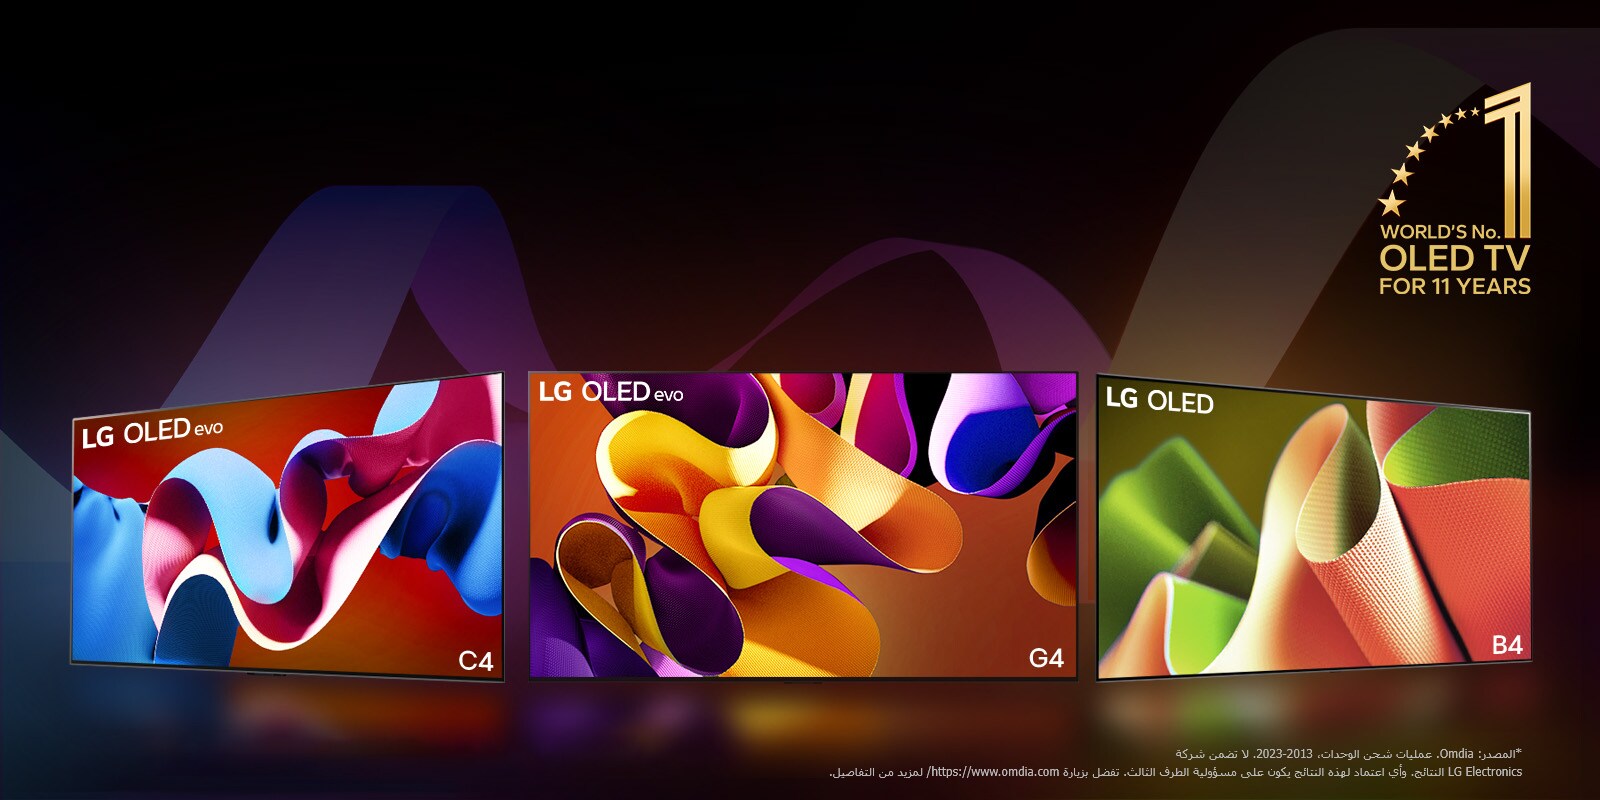 تظهر تلفزيونات LG OLED evo C4، وevo G4، وB4 مصطفة على خلفية سوداء مع دوامات دقيقة ملونة. يظهر شعار "World's number 1 OLED TV for 11 Years" في الصورة.  ينص إخلاء المسؤولية على ما يلي: "المصدر: Omdia. عمليات شحن الوحدات، من 2013 إلى 2023. لا تضمن شركة LG Electronics النتائج. وأي اعتماد على هذه النتائج يكون على مسؤولية الطرف الثالث. تفضل بزيارة https://www.omdia.com/ لمزيد من التفاصيل."